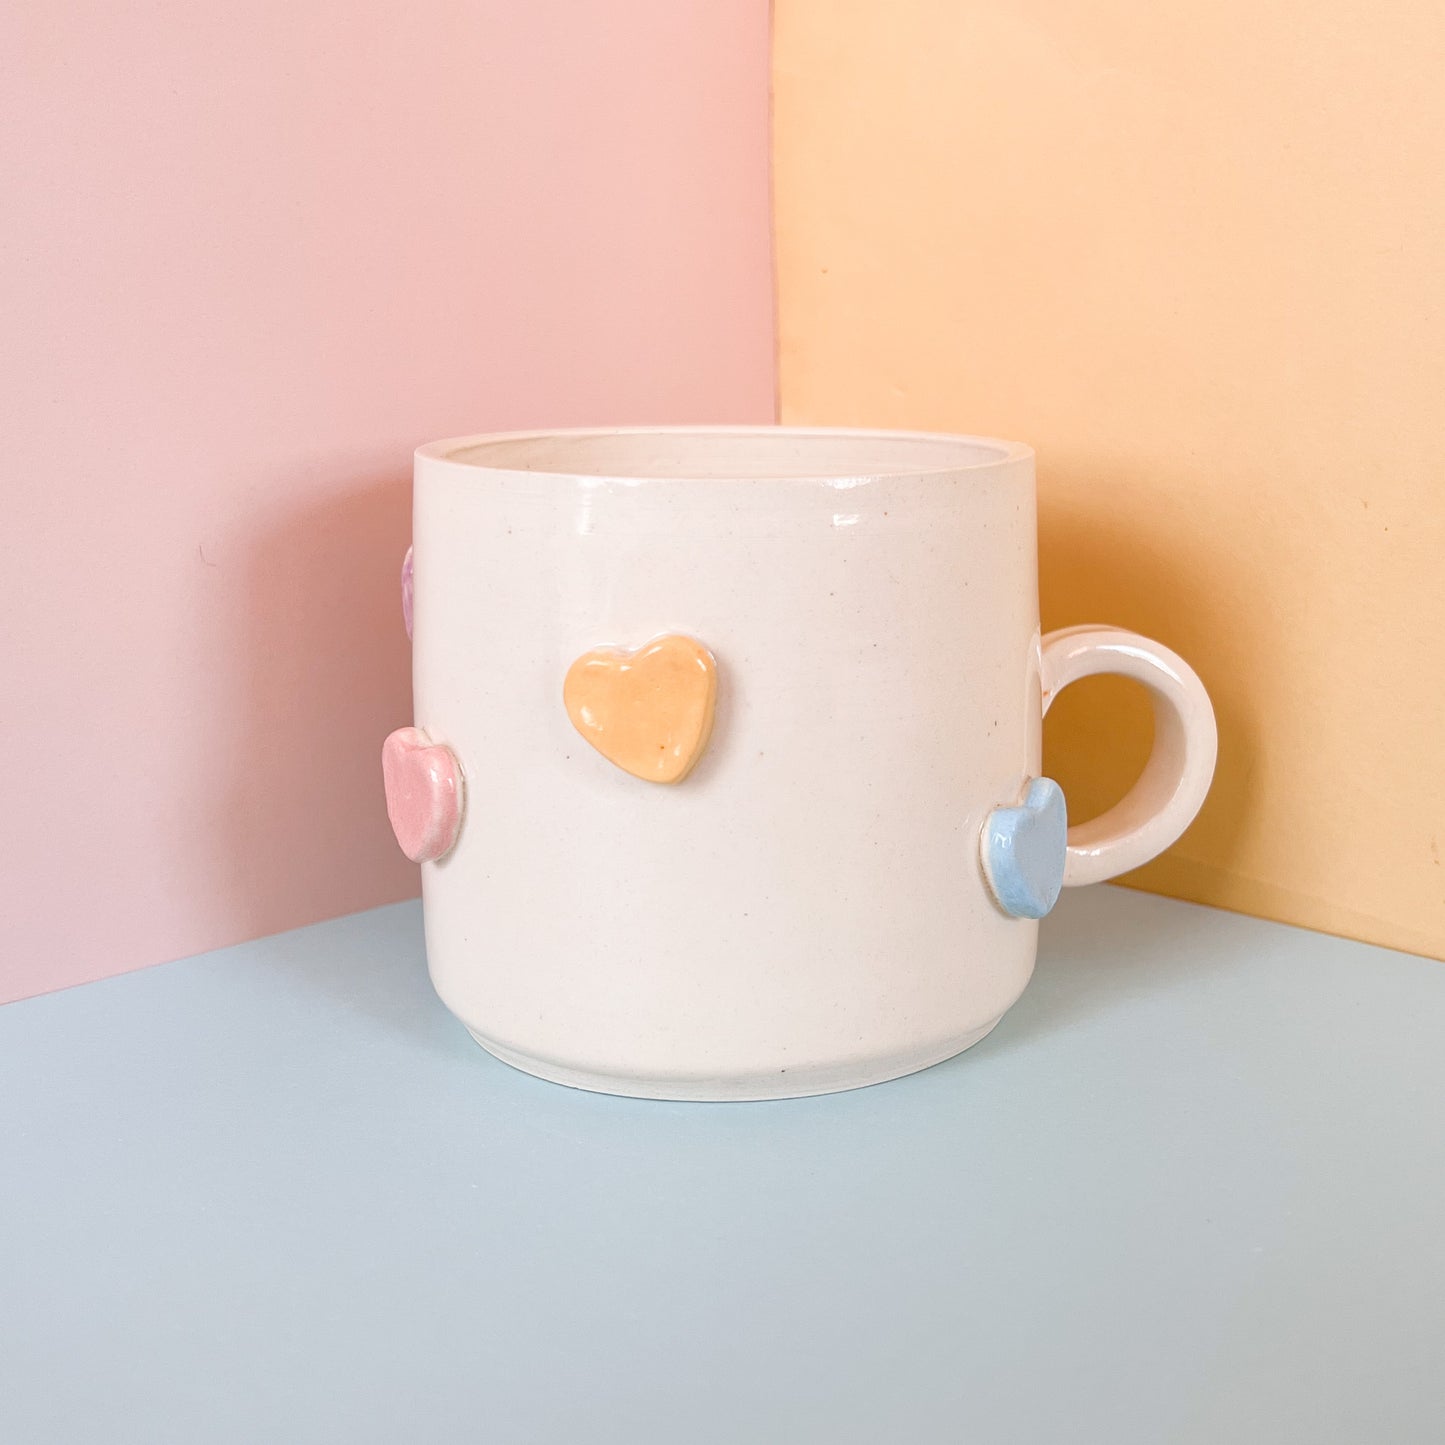 Candy hearts mug